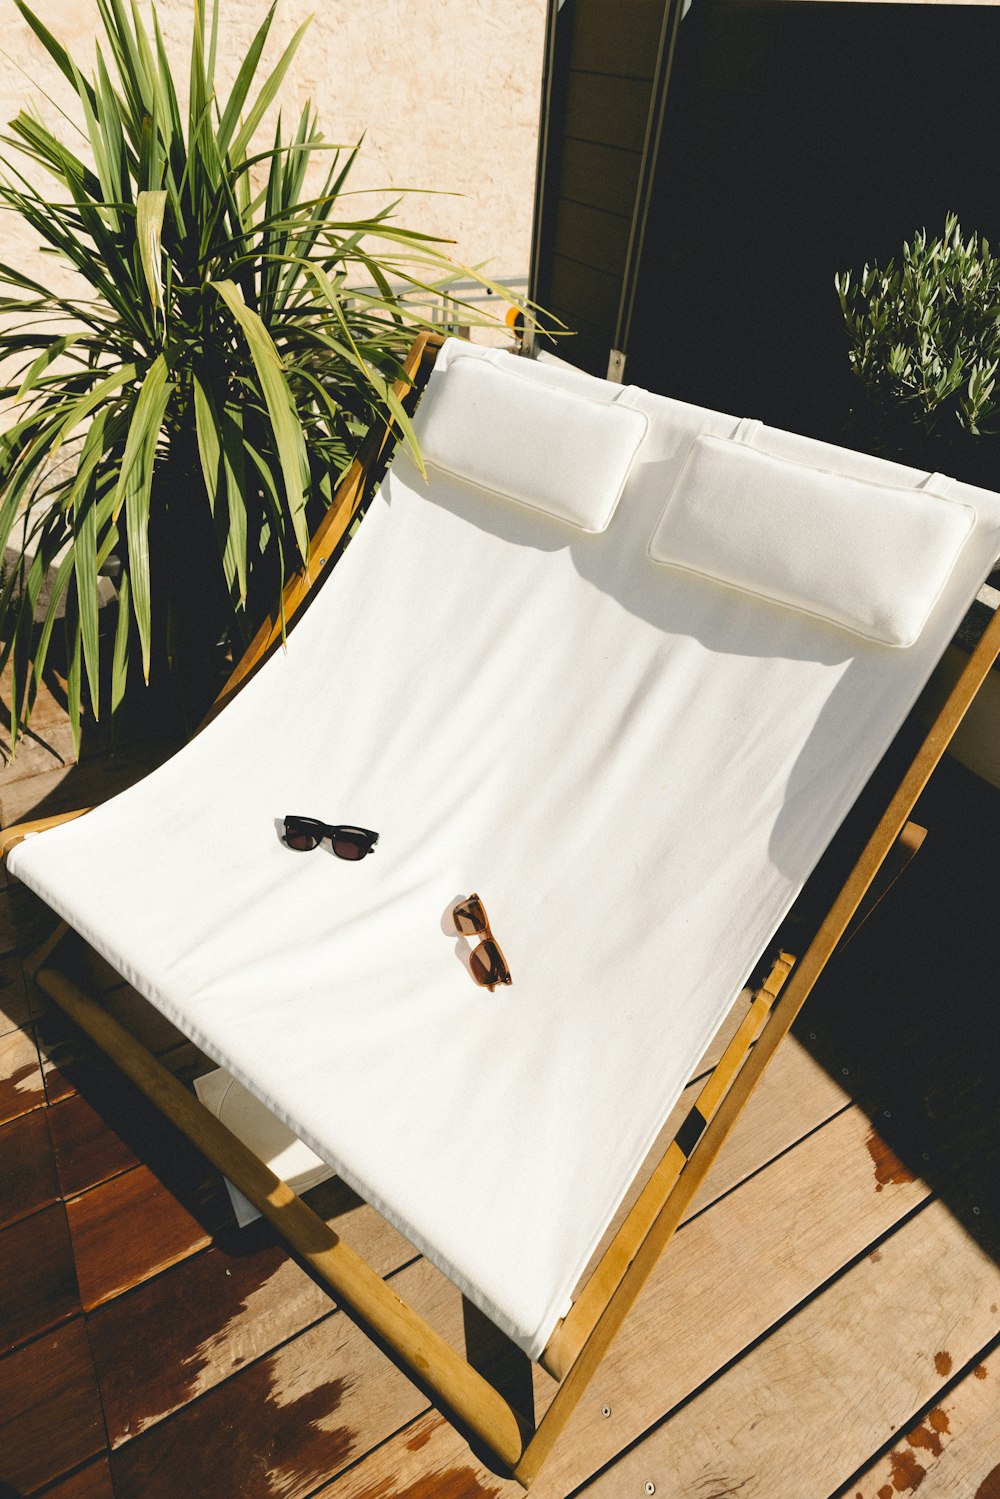 白と茶色の木製の椅子